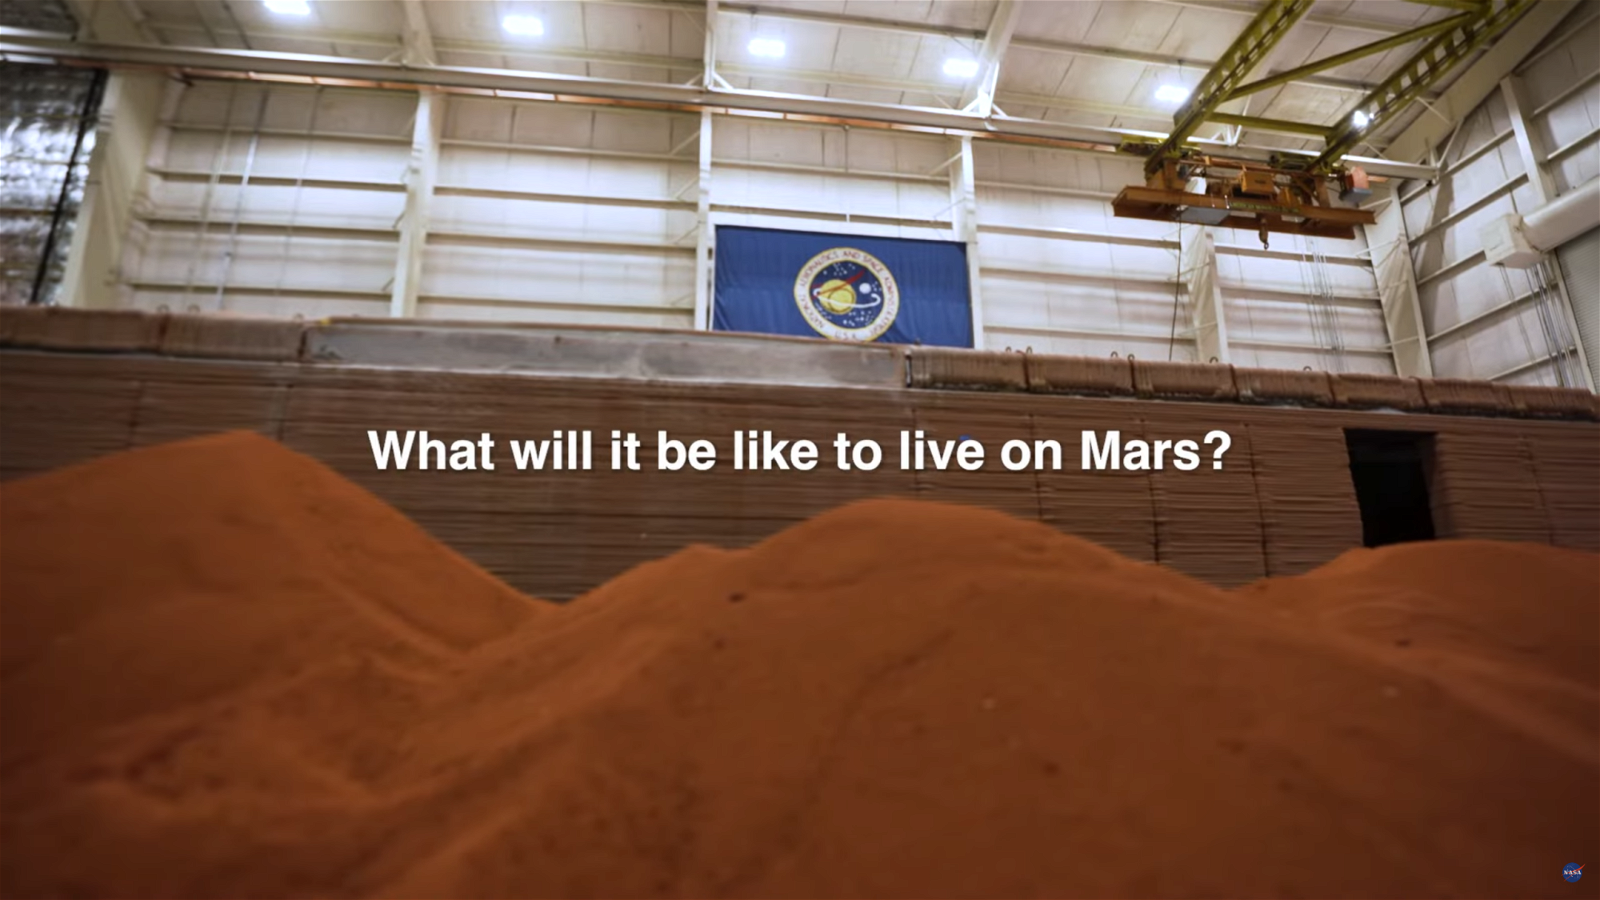 Immagine di Vuoi vivere su Marte? Ci sono 4 posti disponibili